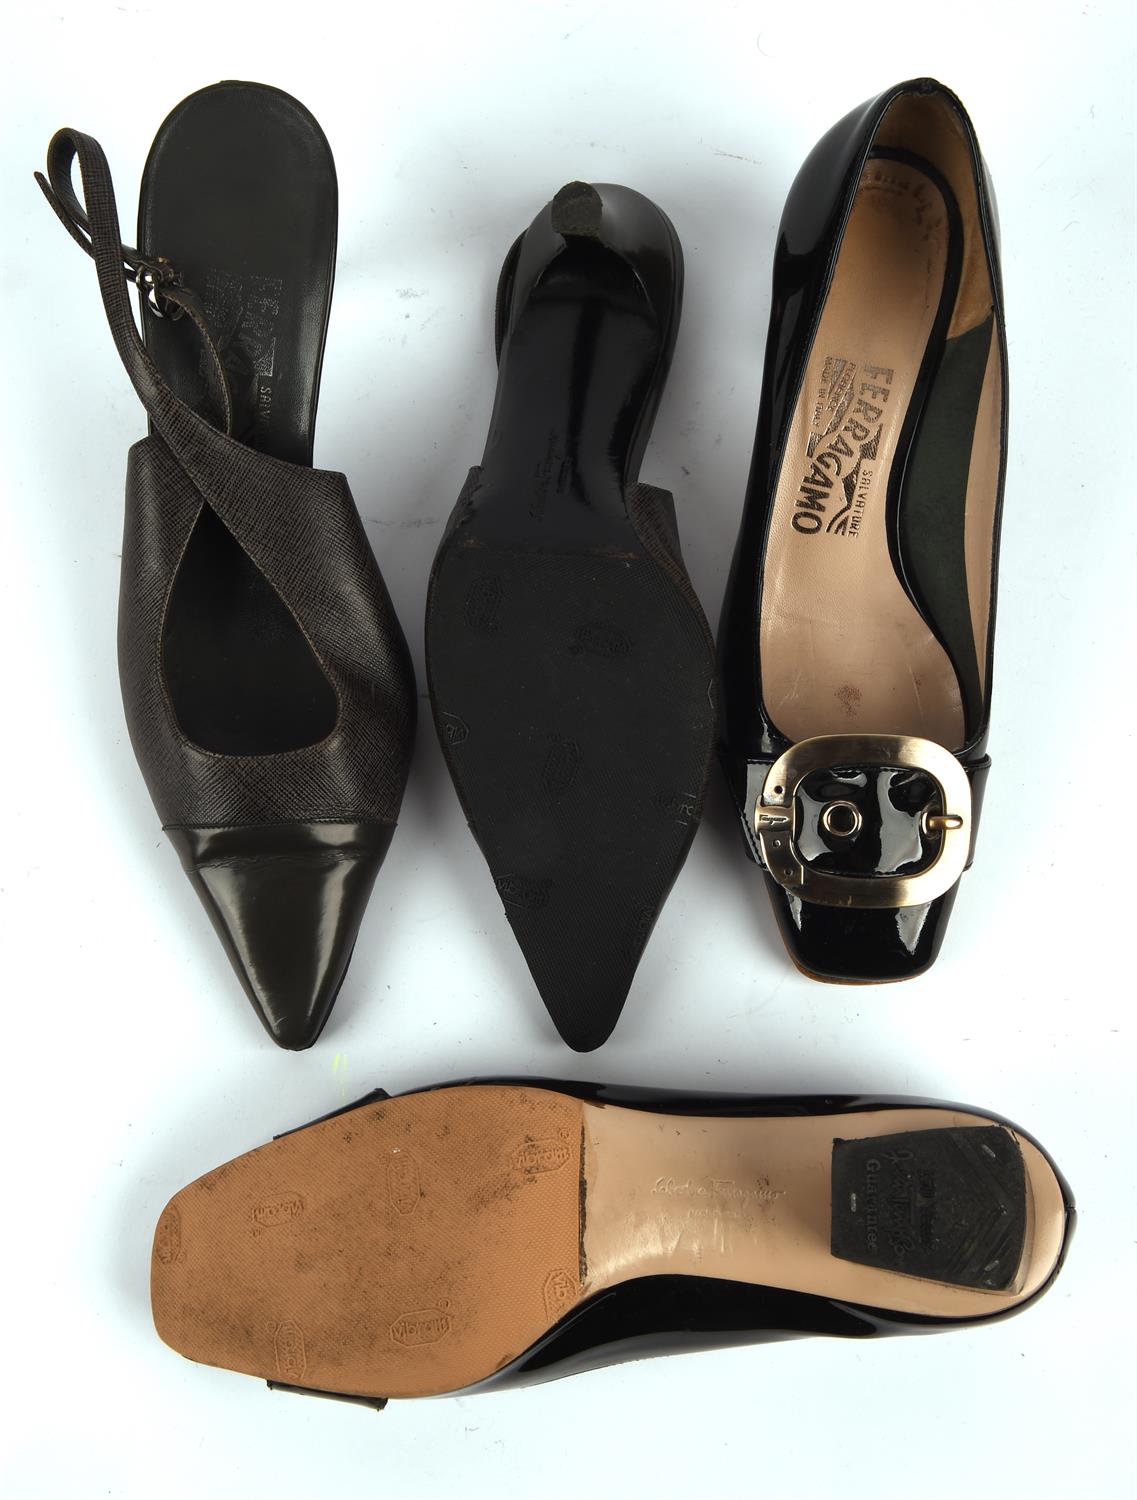 SALVATORRE FERRAGAMO four pairs of ladies 1990s vintage shoes - black patent court shoes, - Image 2 of 4